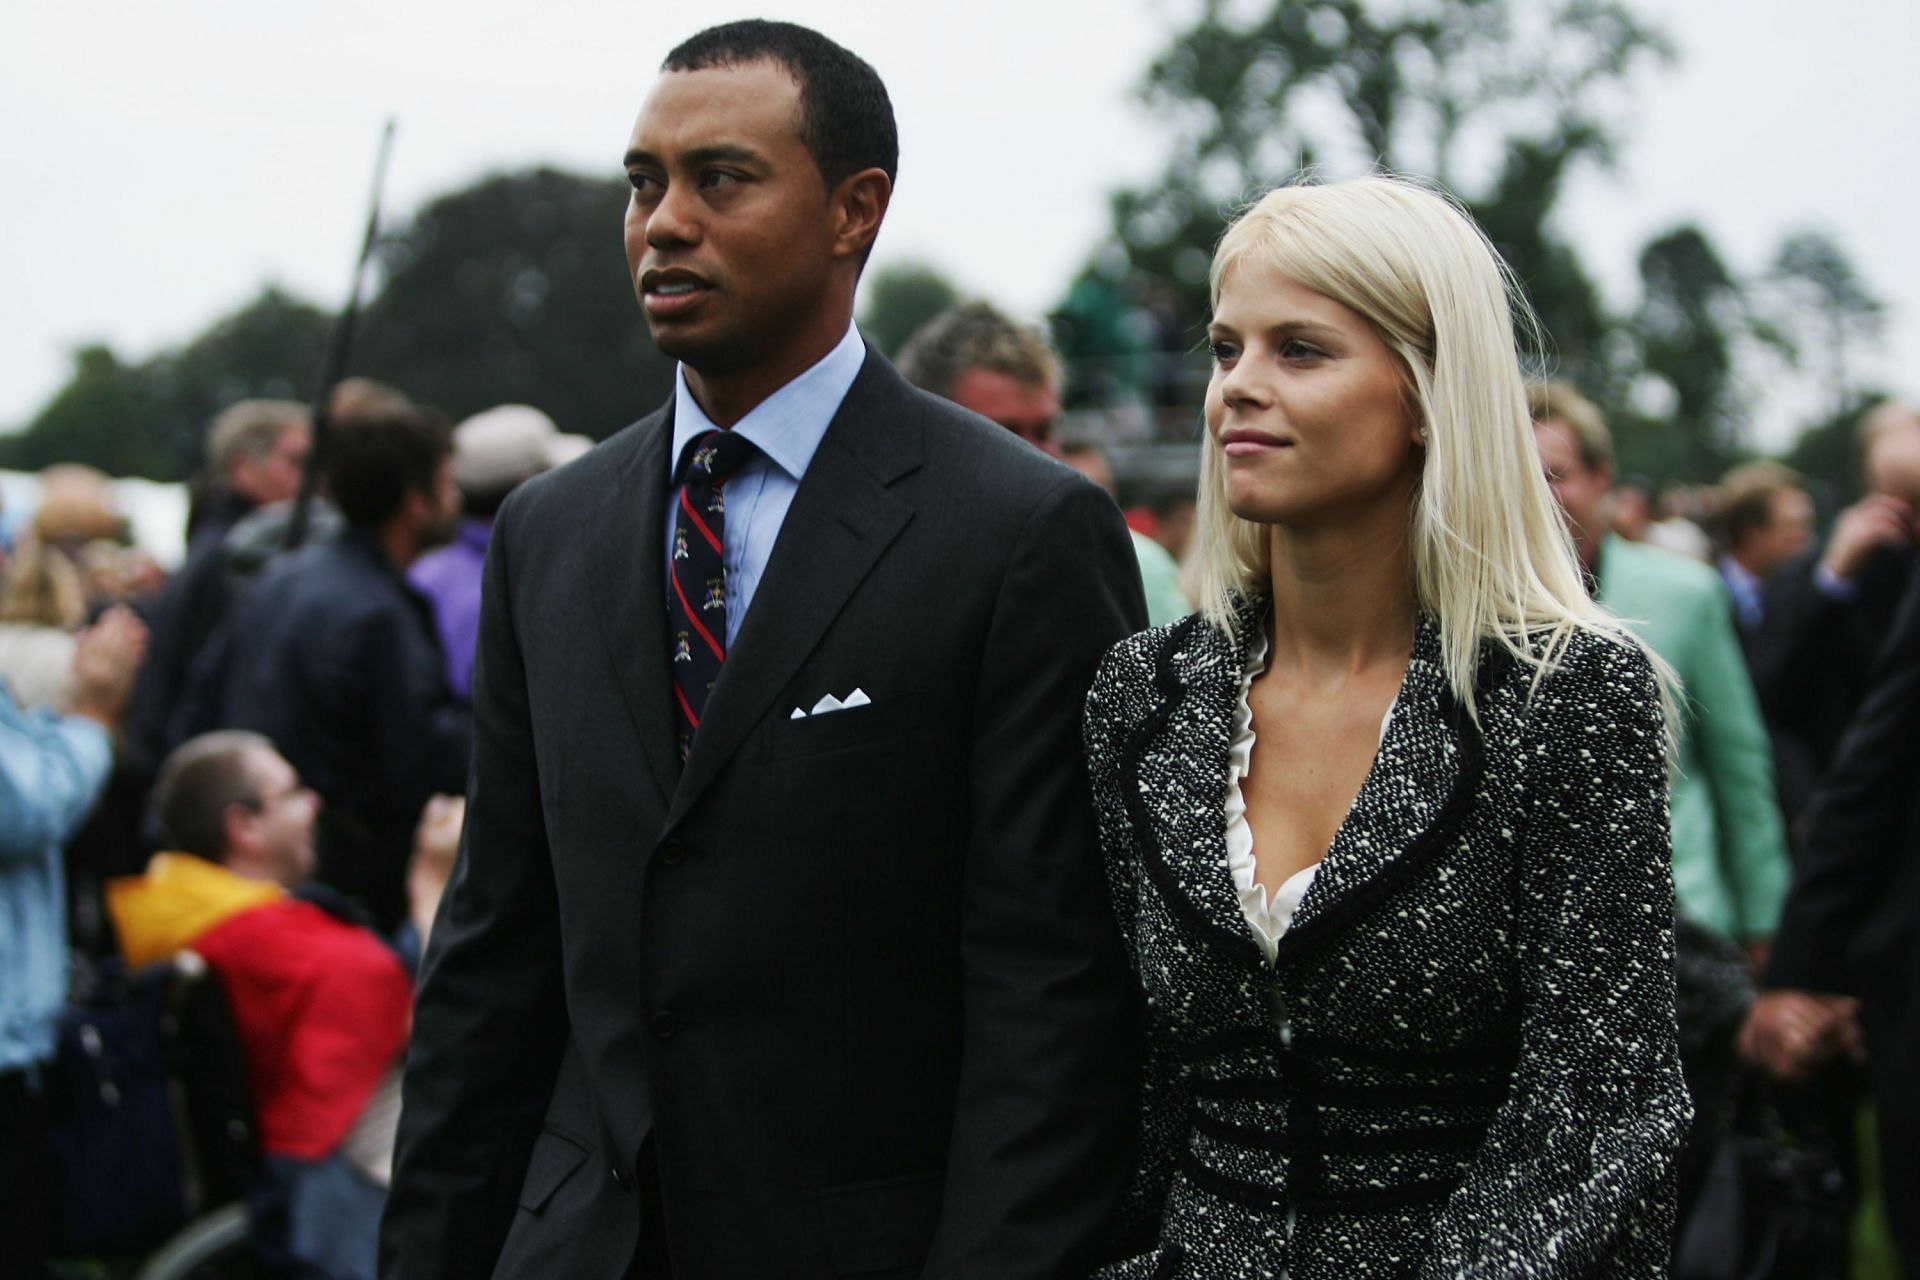 Tiger Woods and Elin Nordegren 